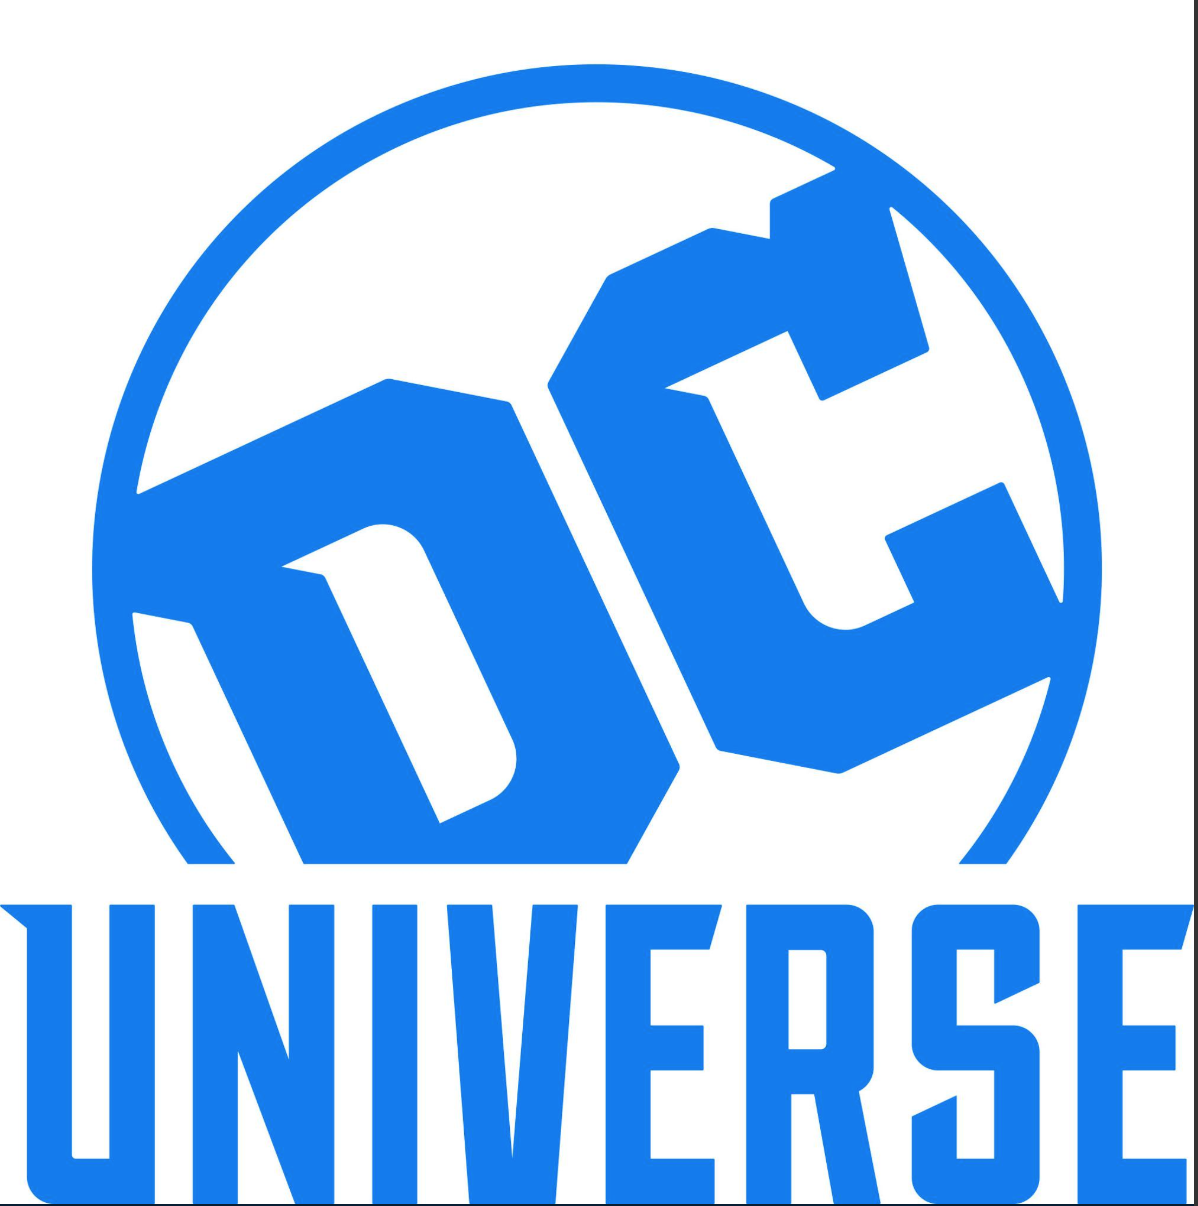 Swamp Thing de James Wan será la primera gran serie del nuevo DC UNIVERSE